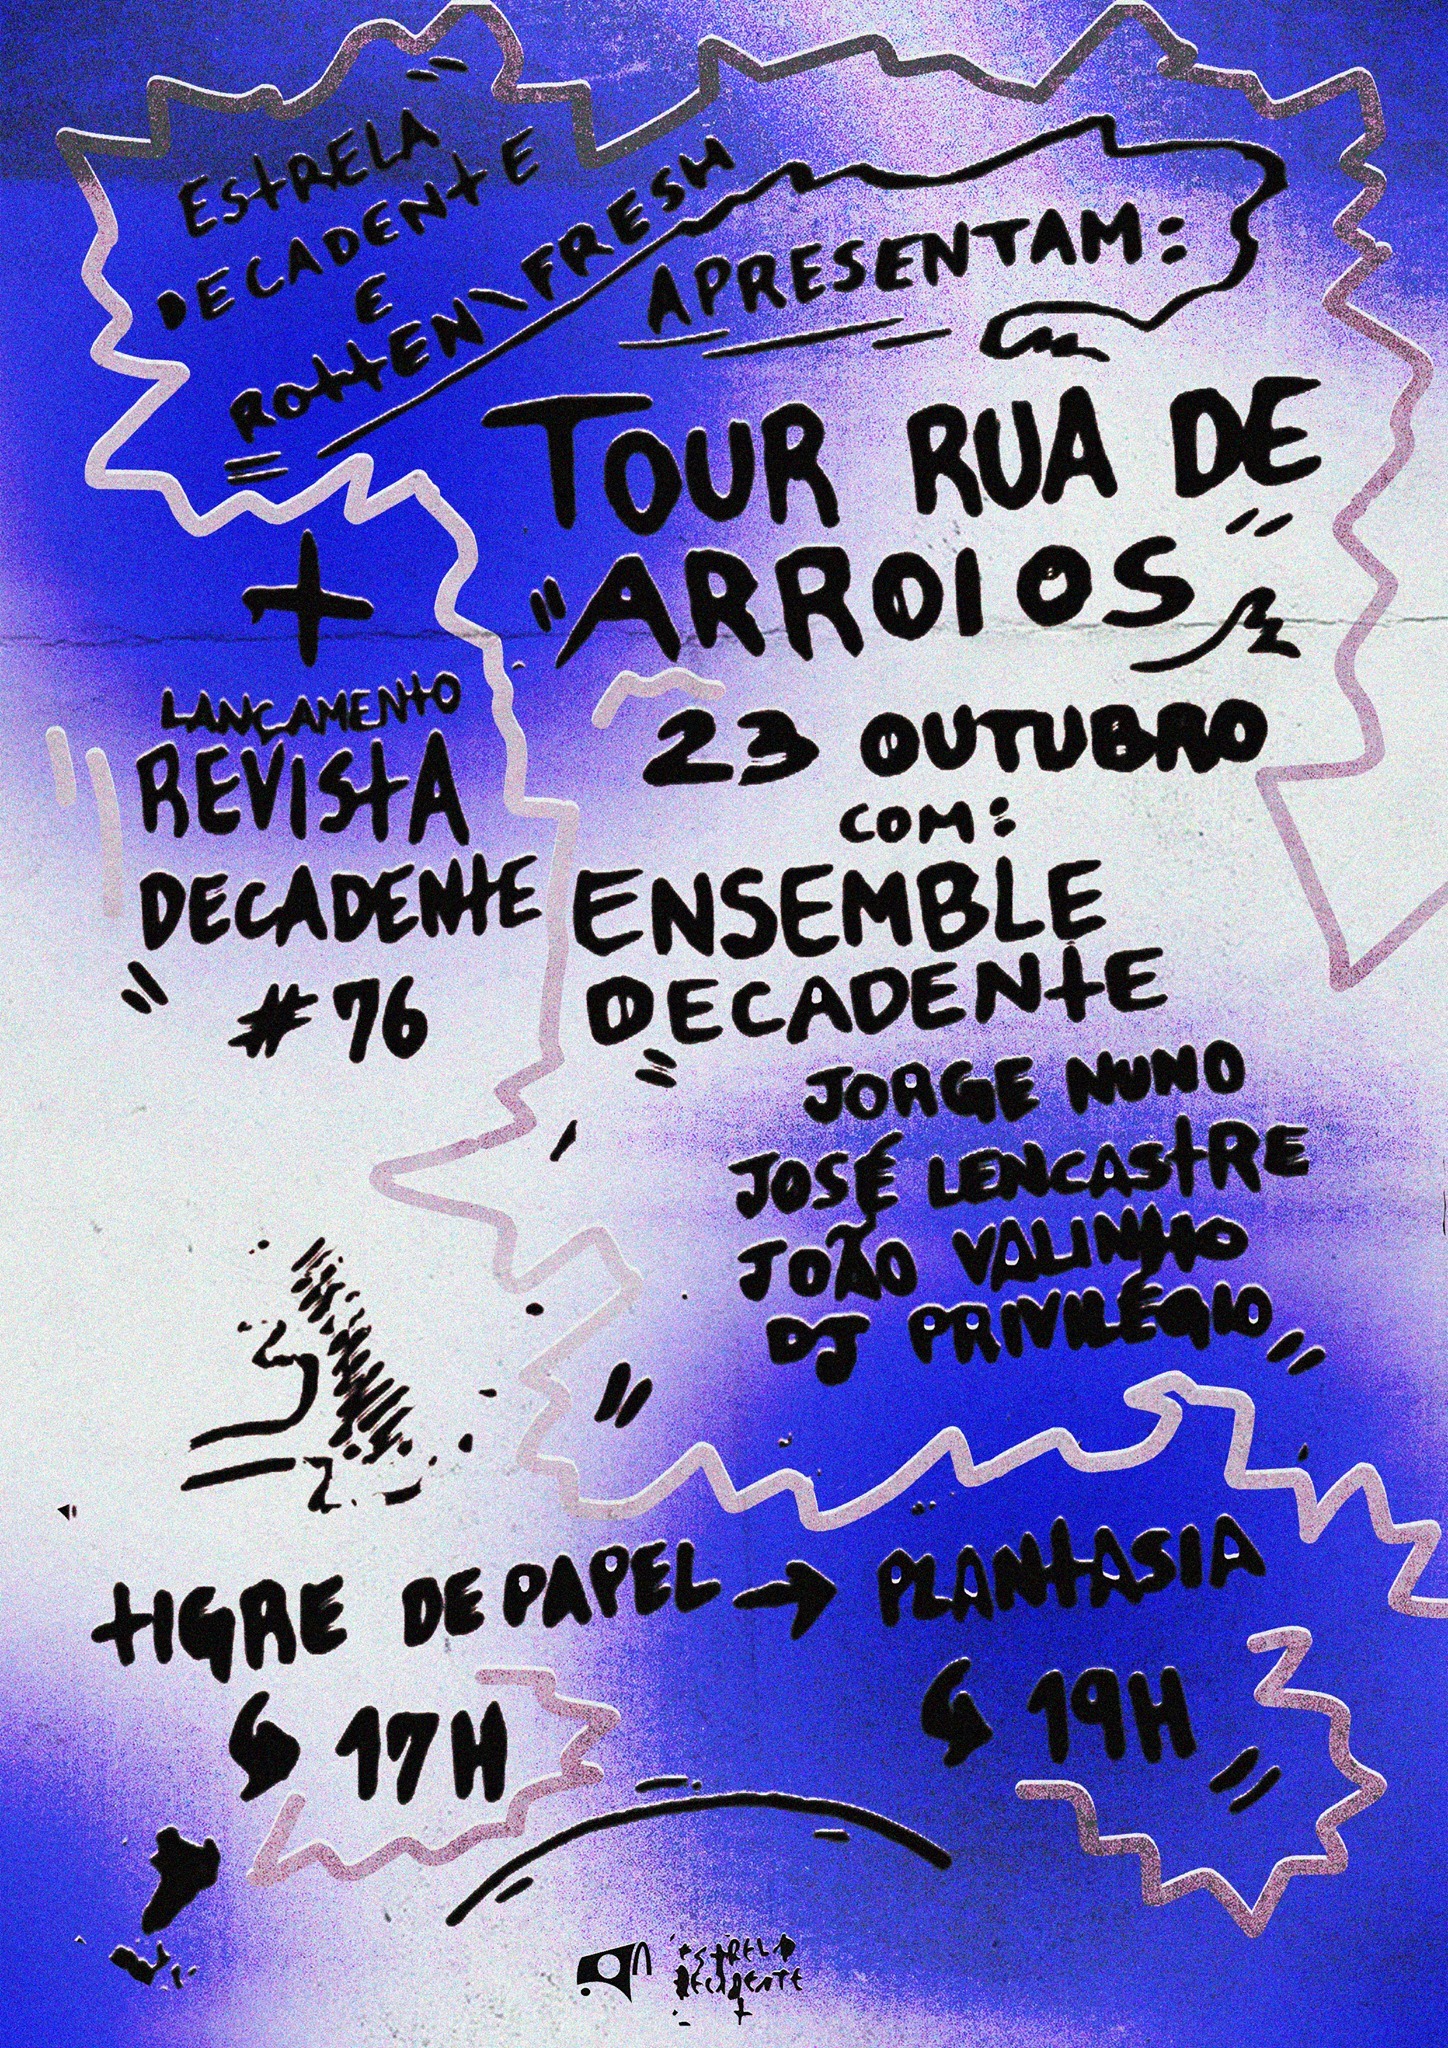 [R\F] TOUR RUA DE ARROIOS